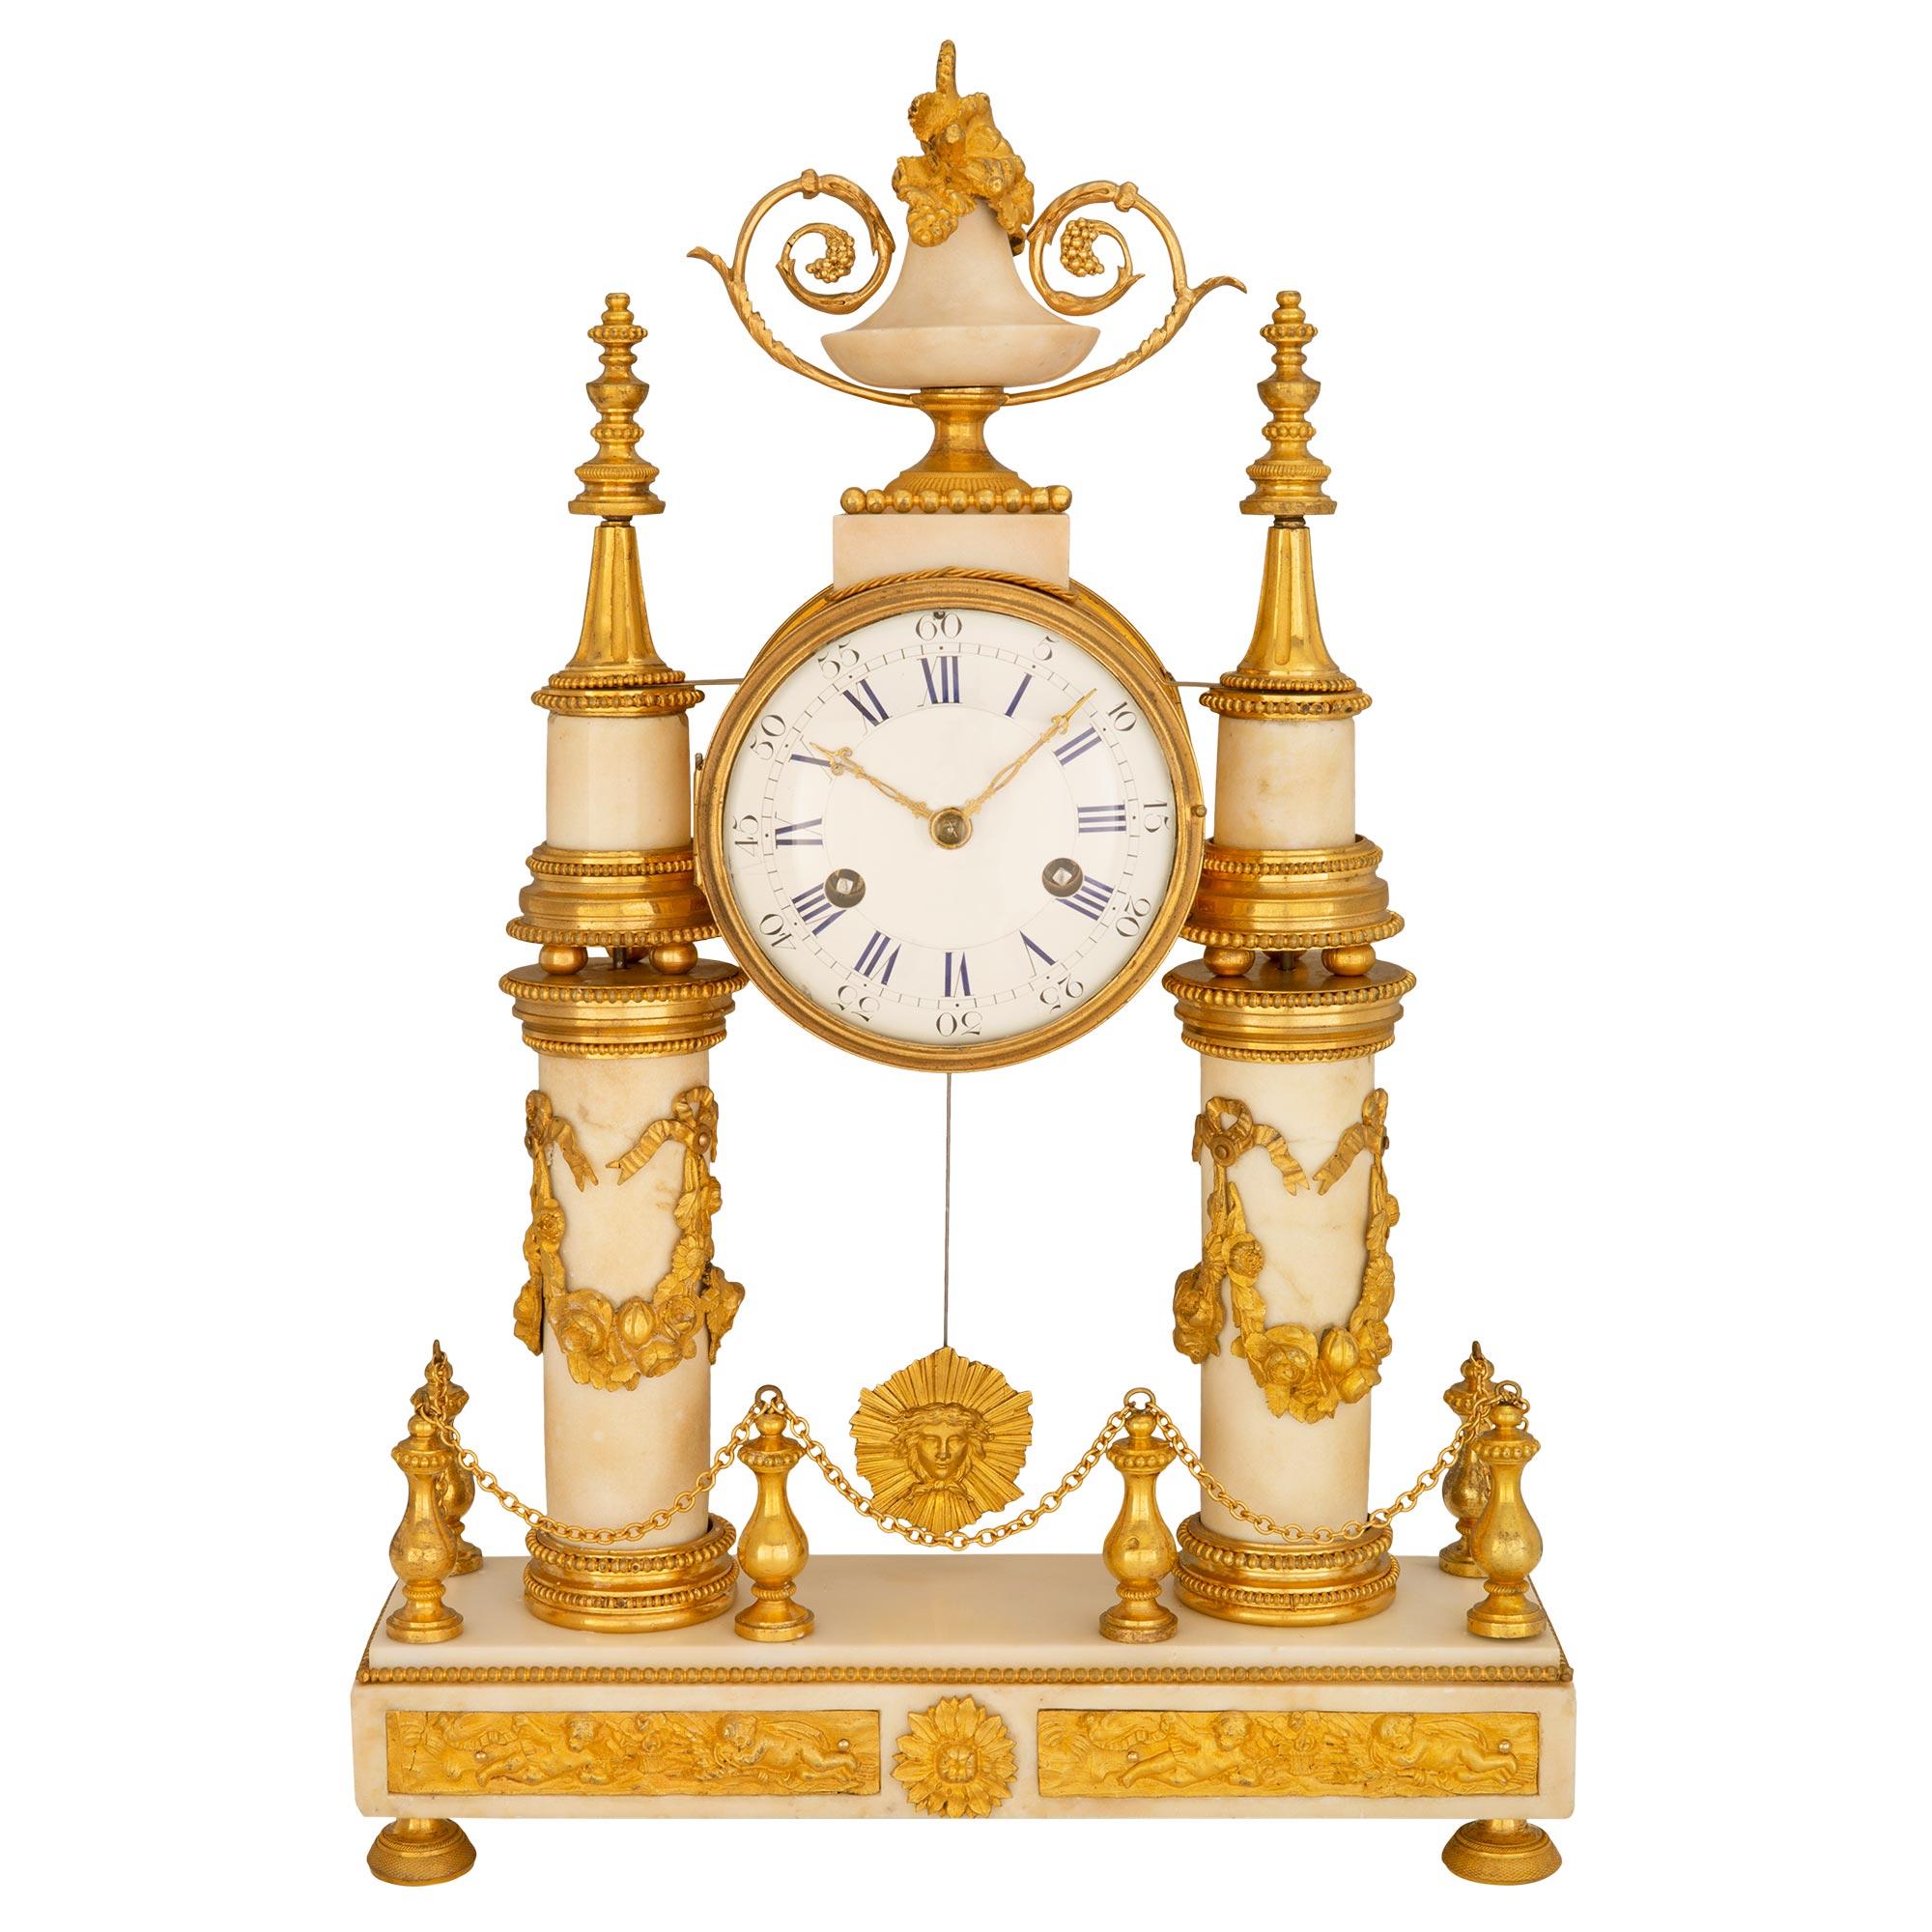 Eine exquisite französische Uhr aus dem frühen 19. Jahrhundert aus weißem Carrara-Marmor und Ormolu. Der rechteckige Marmorsockel mit Perlenbesatz und Plaketten im Clodion-Stil steht auf Ormolu-Stützen und wird von einer floralen Halterung